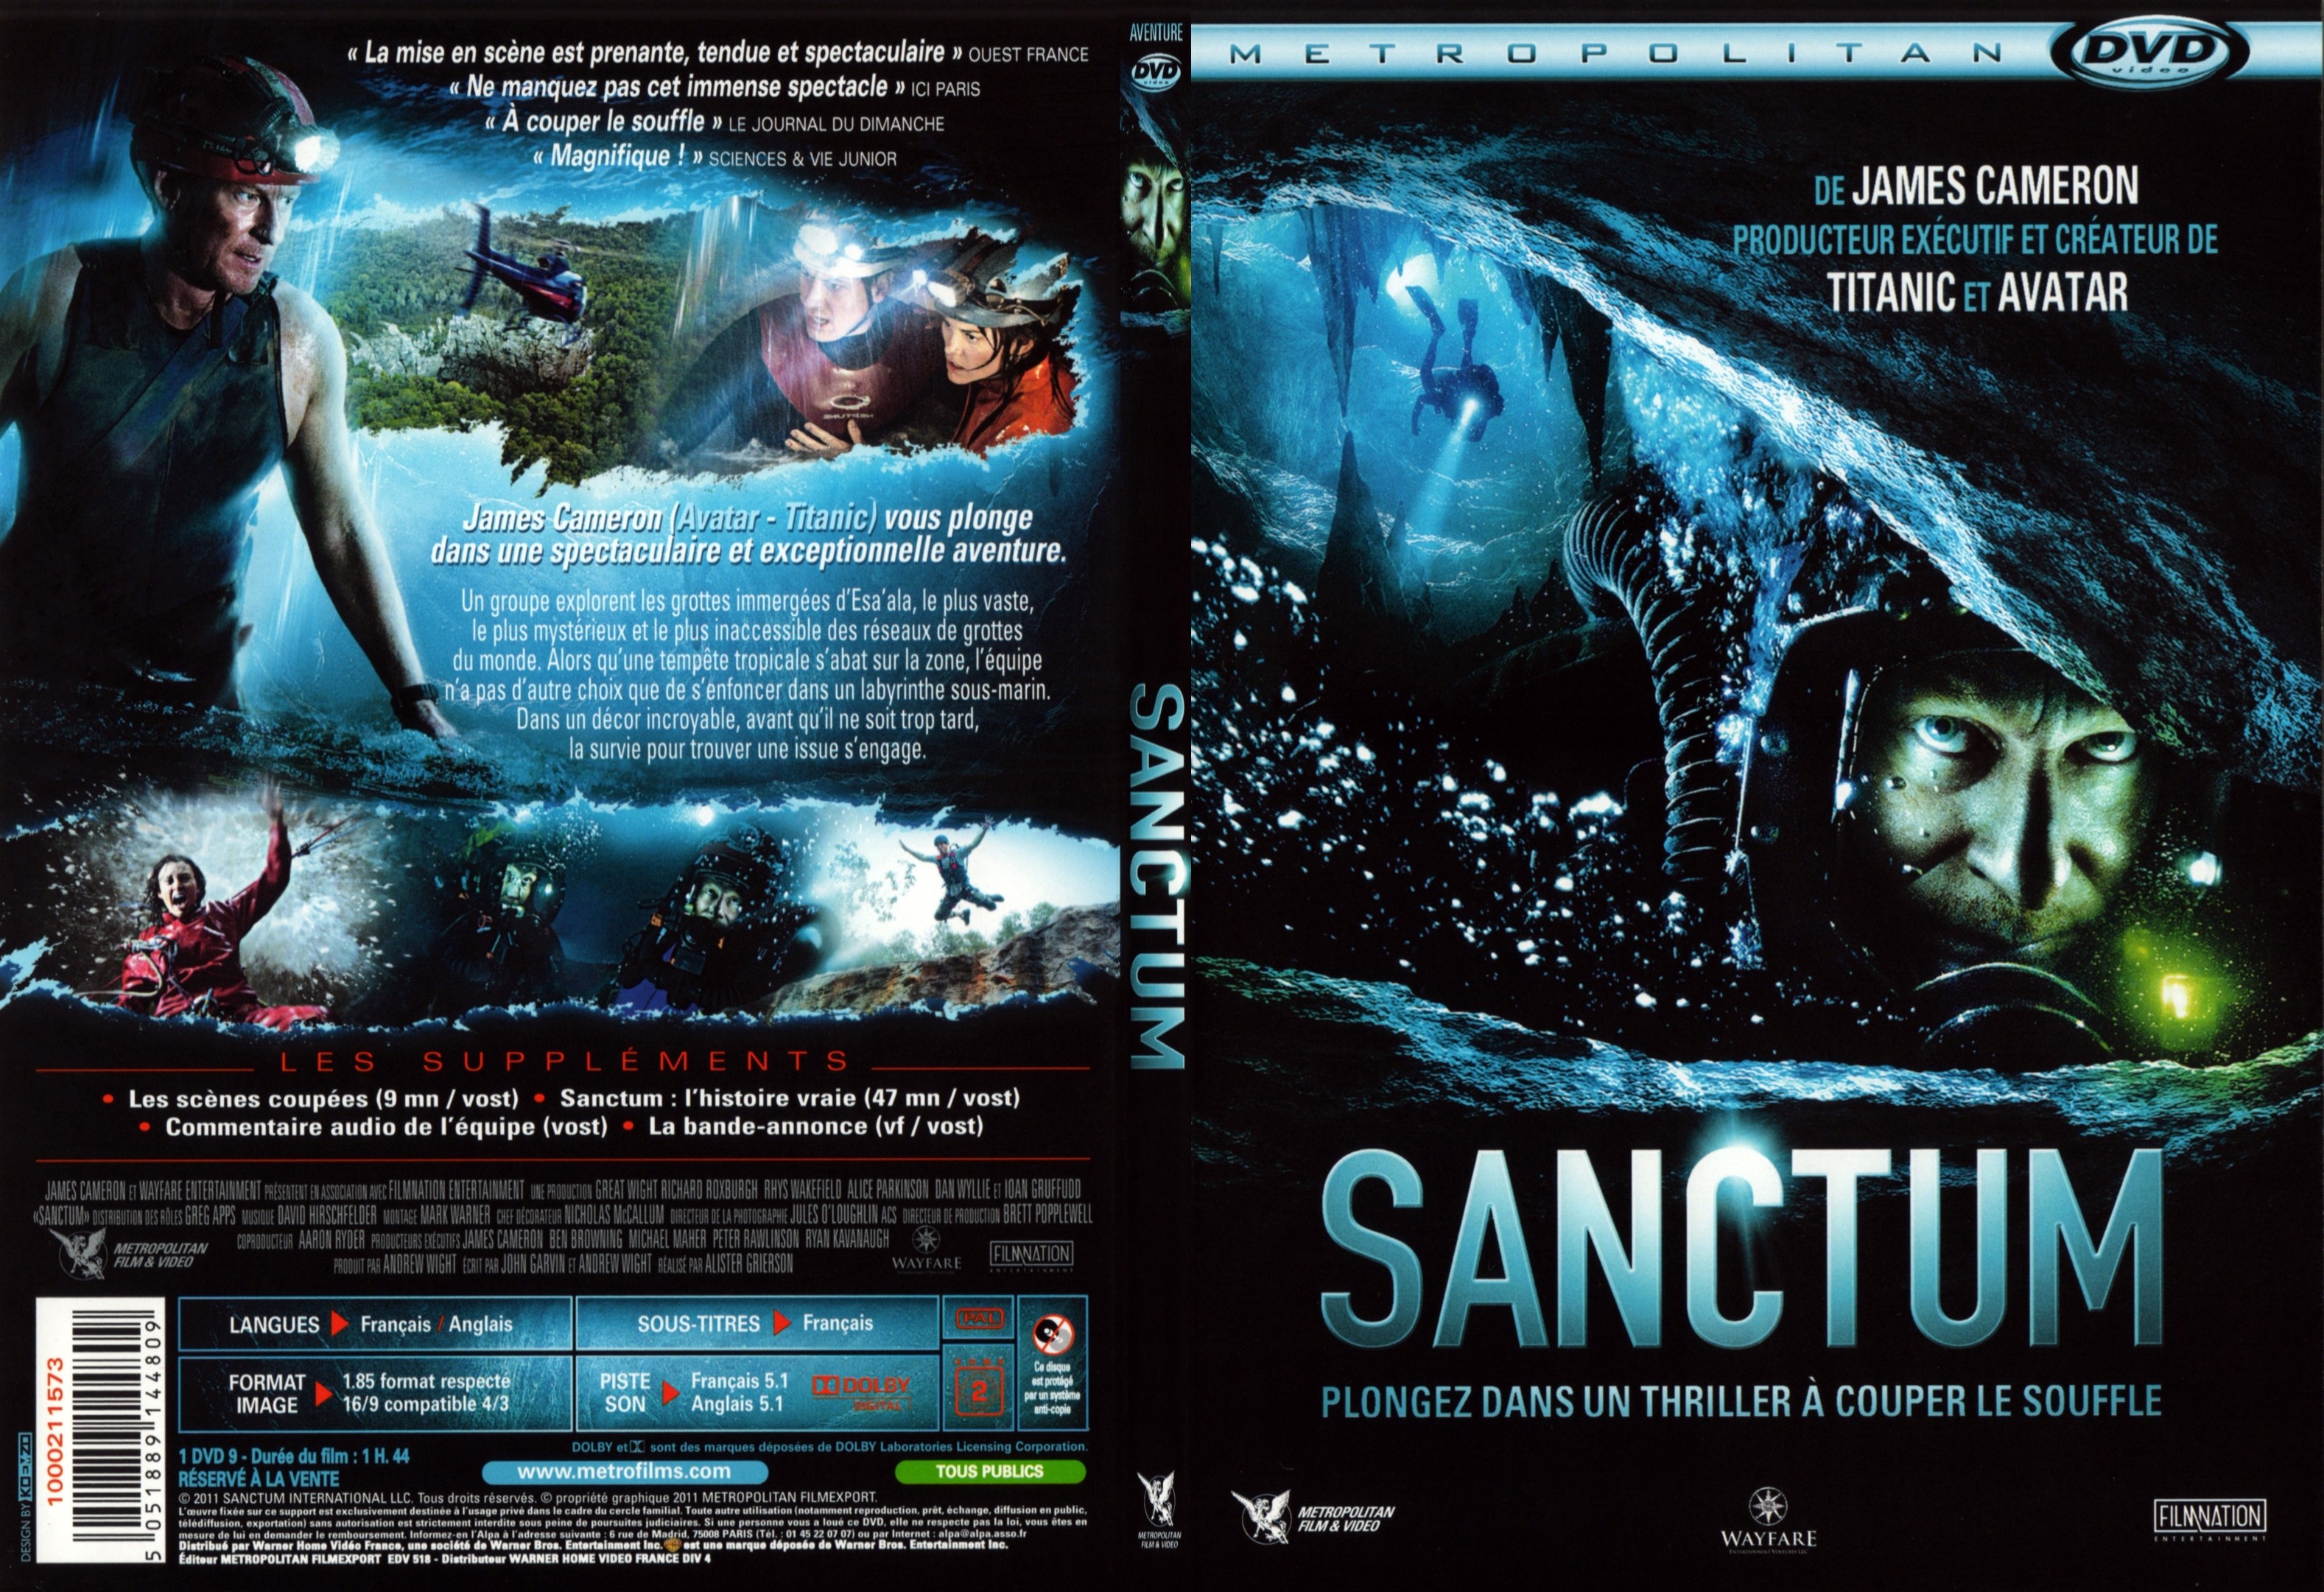 Jaquette DVD Sanctum - SLIM